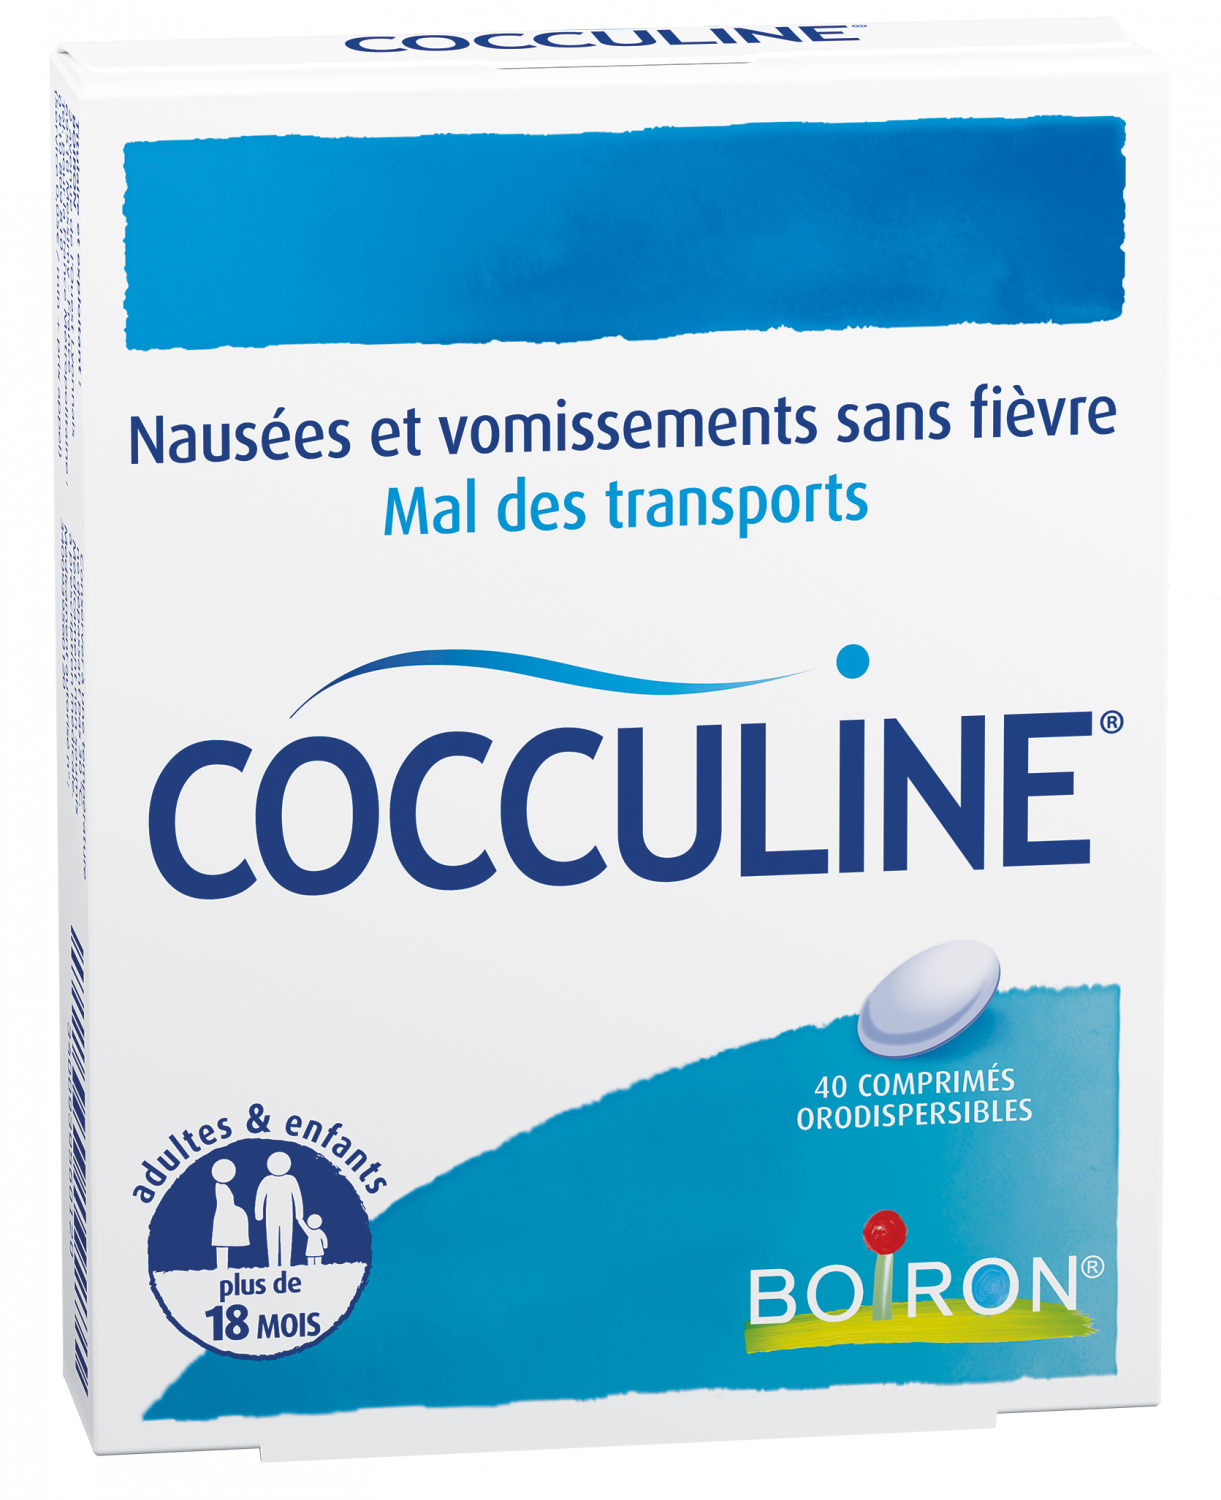 Cocculine comprimé orodispersible Boiron - boite de 40 comprimés